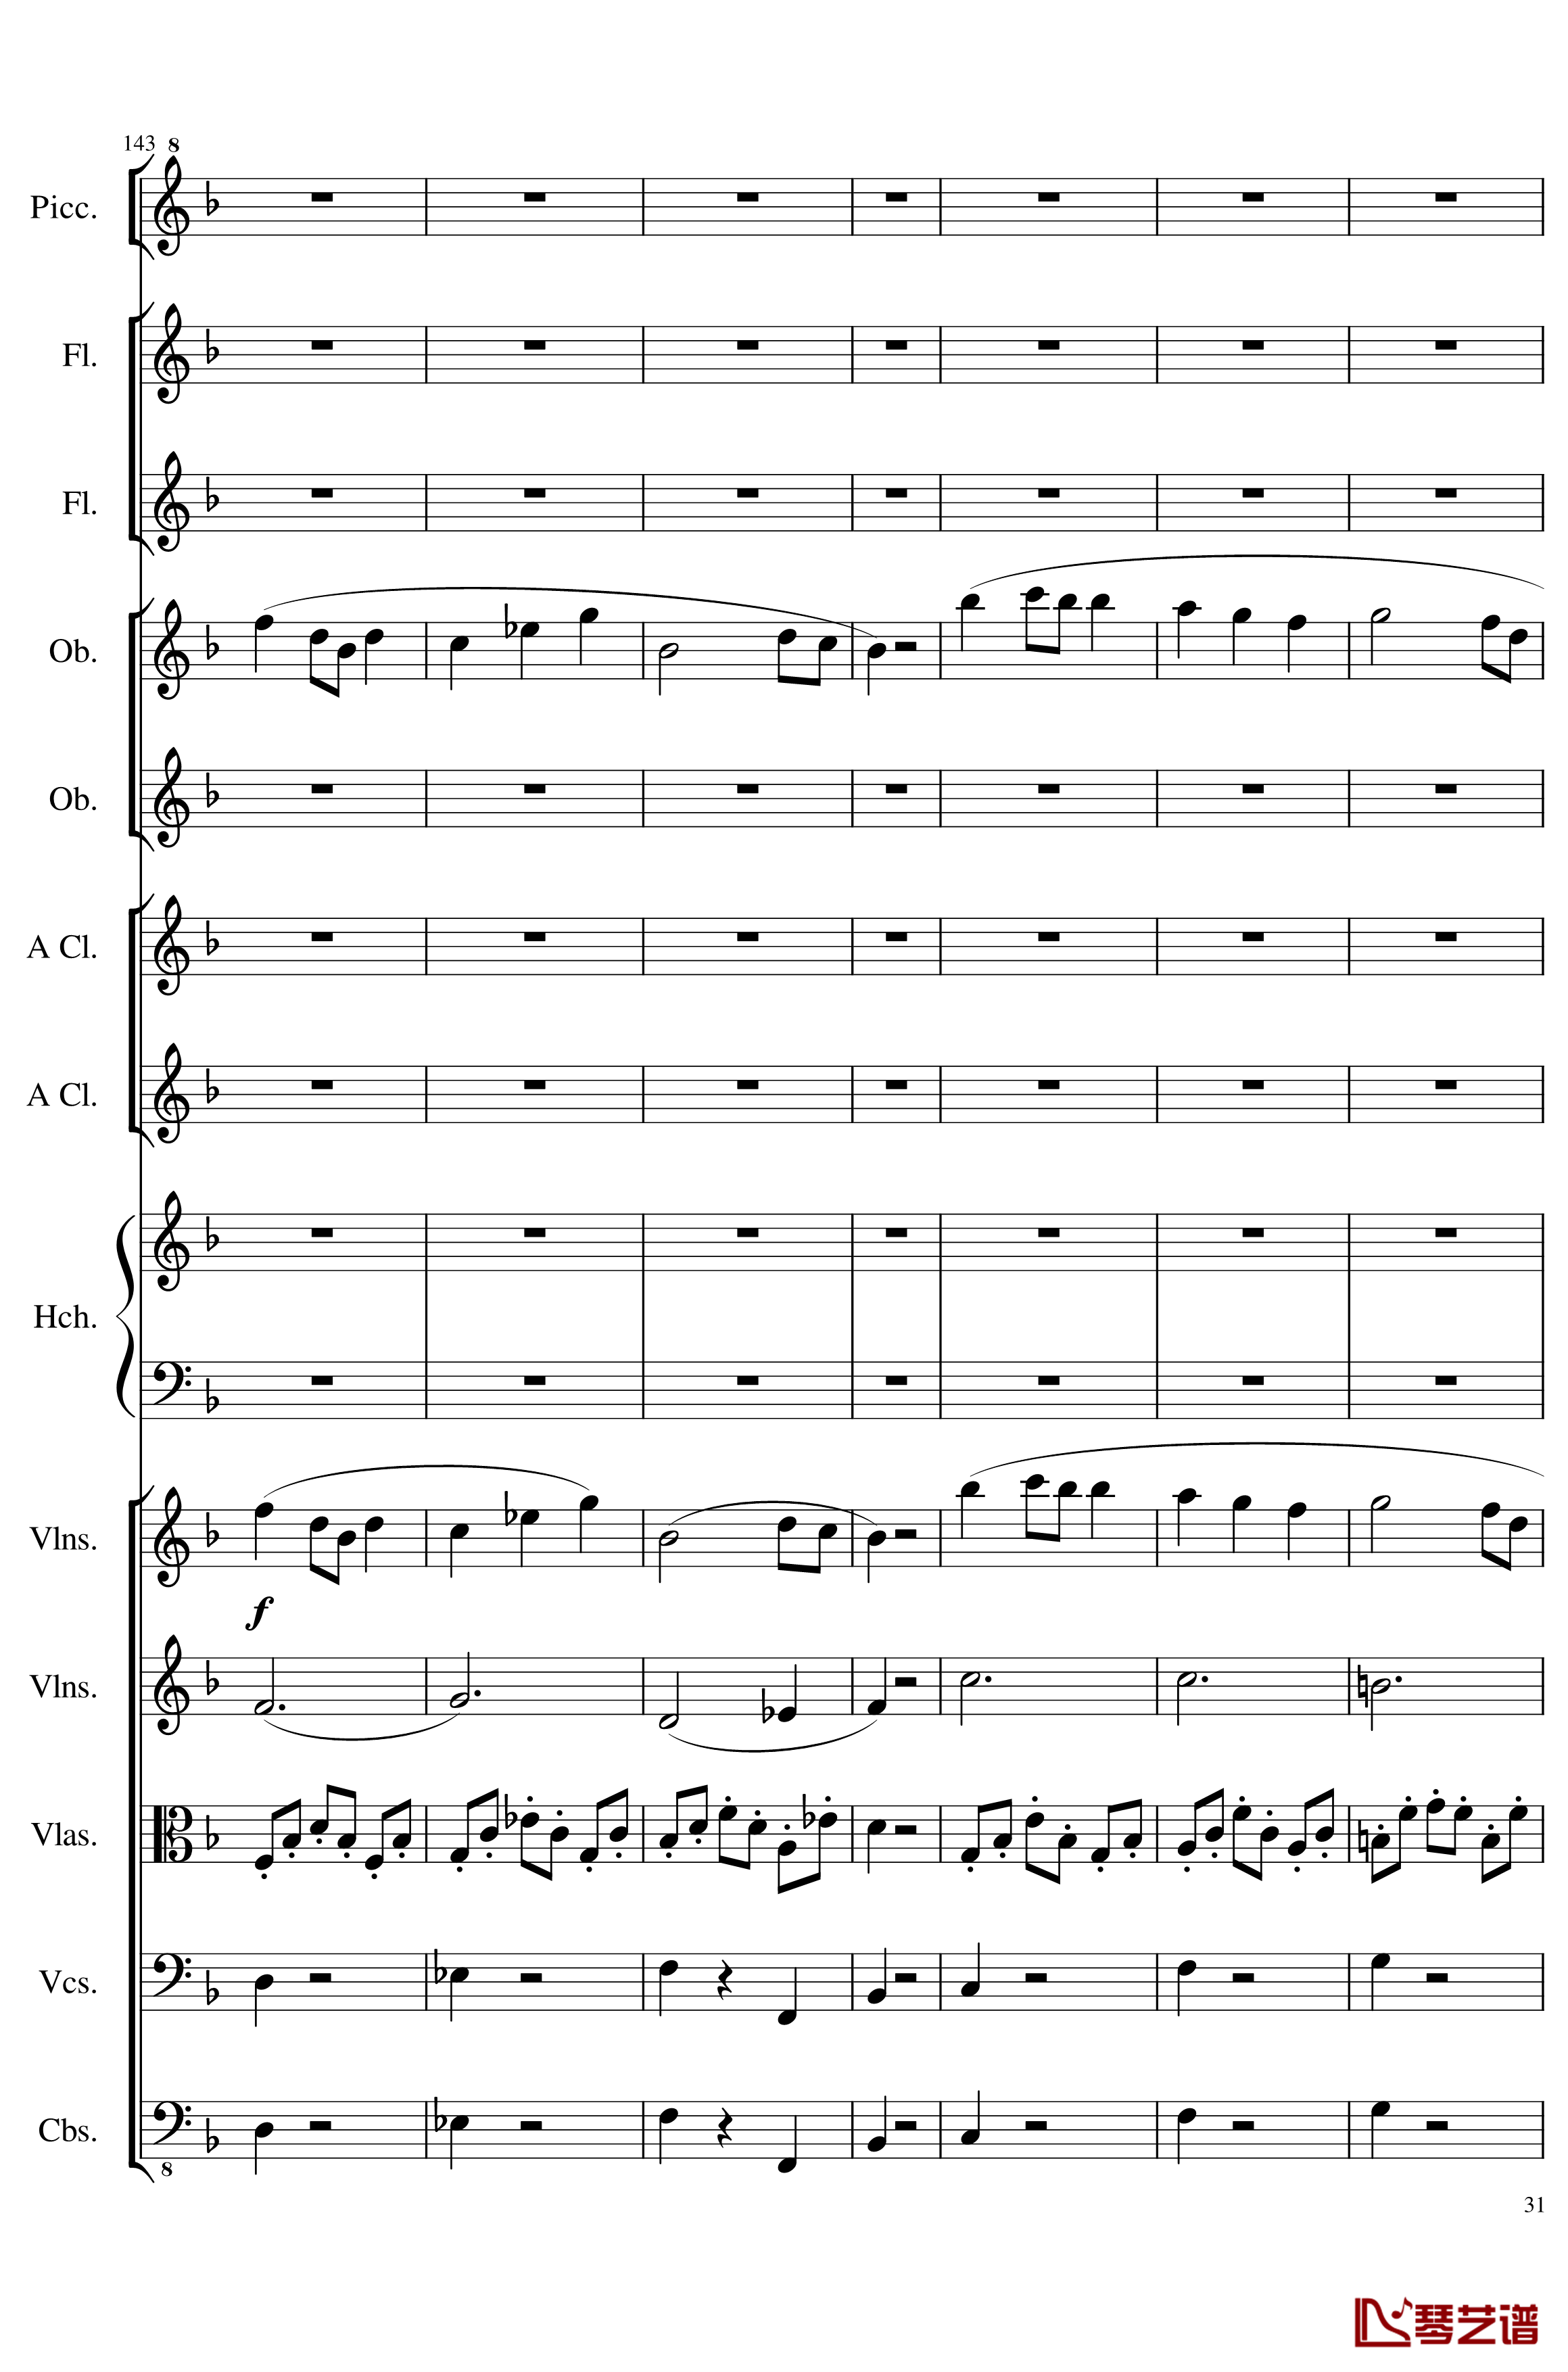 7 Contredanses No.1-7, Op.124钢琴谱-7首乡村舞曲，第一至第七，作品124-一个球31